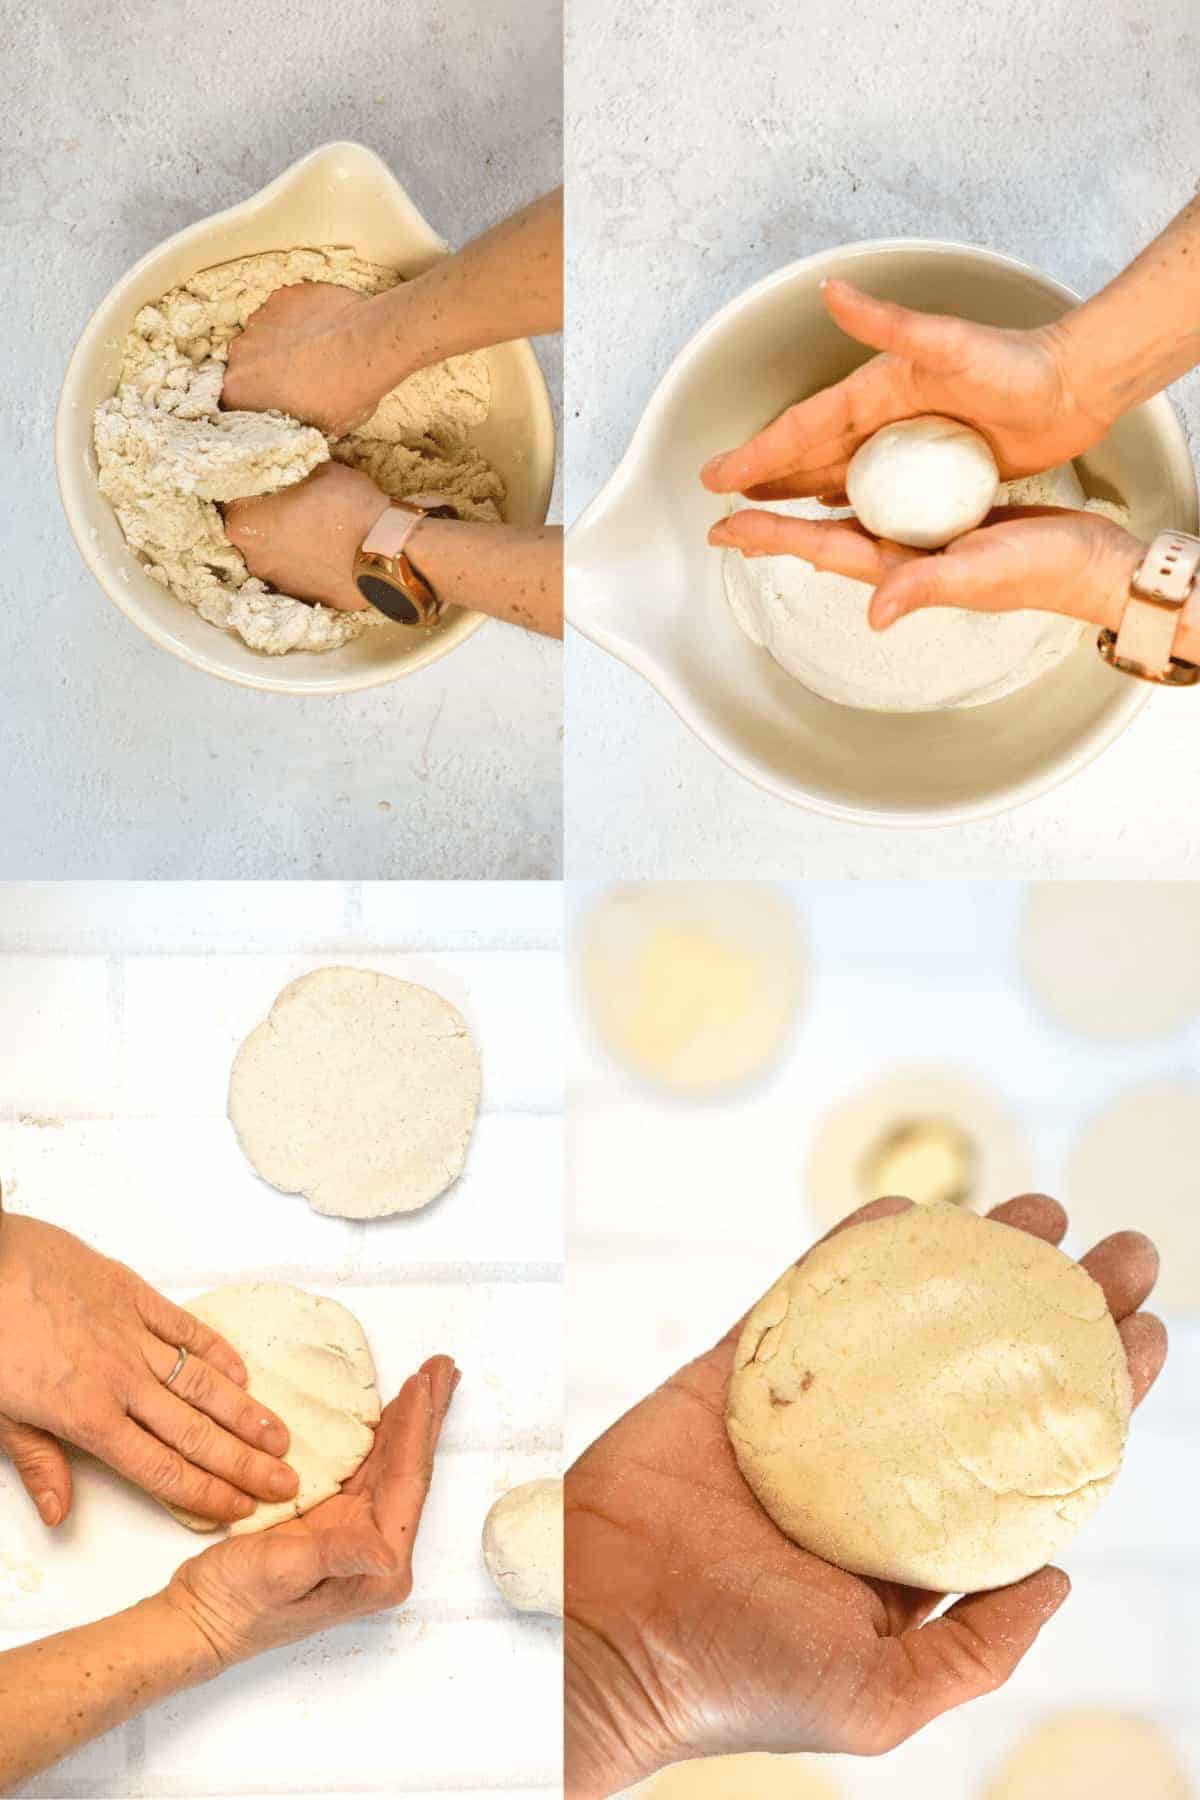 How to make vegan Pupusas dough